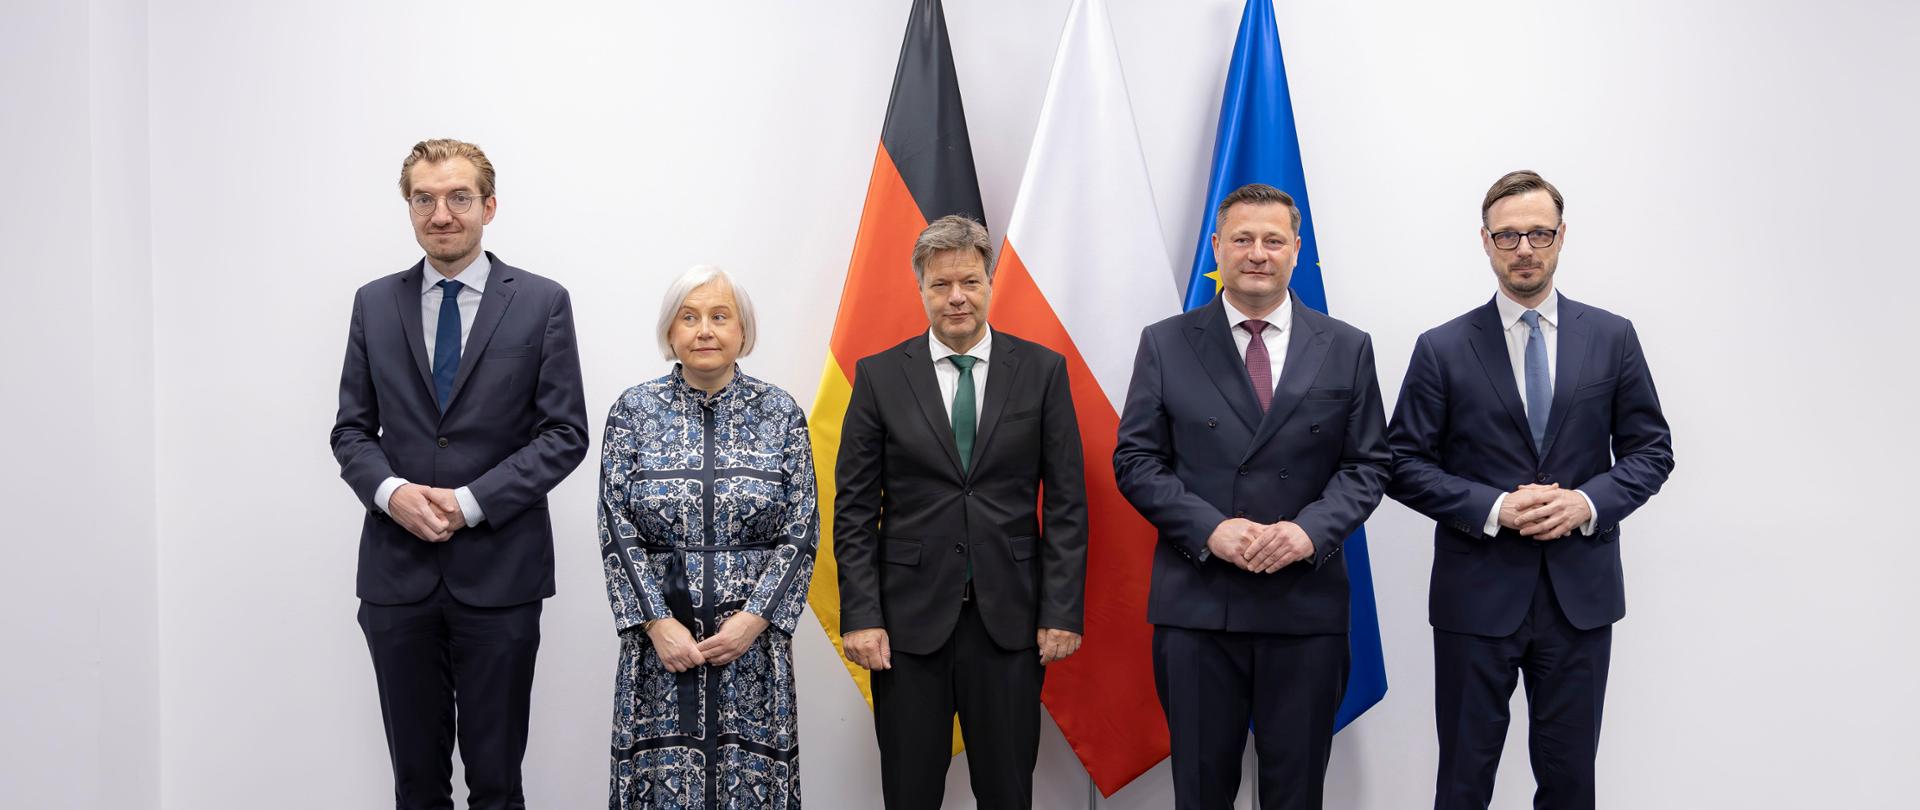 Ministrowie i wicekanclerz, minister gospodarki i ochrony klimatu Niemiec, Robert Habeck na tle flag: polskiej, niemieckiej i unijnej. 